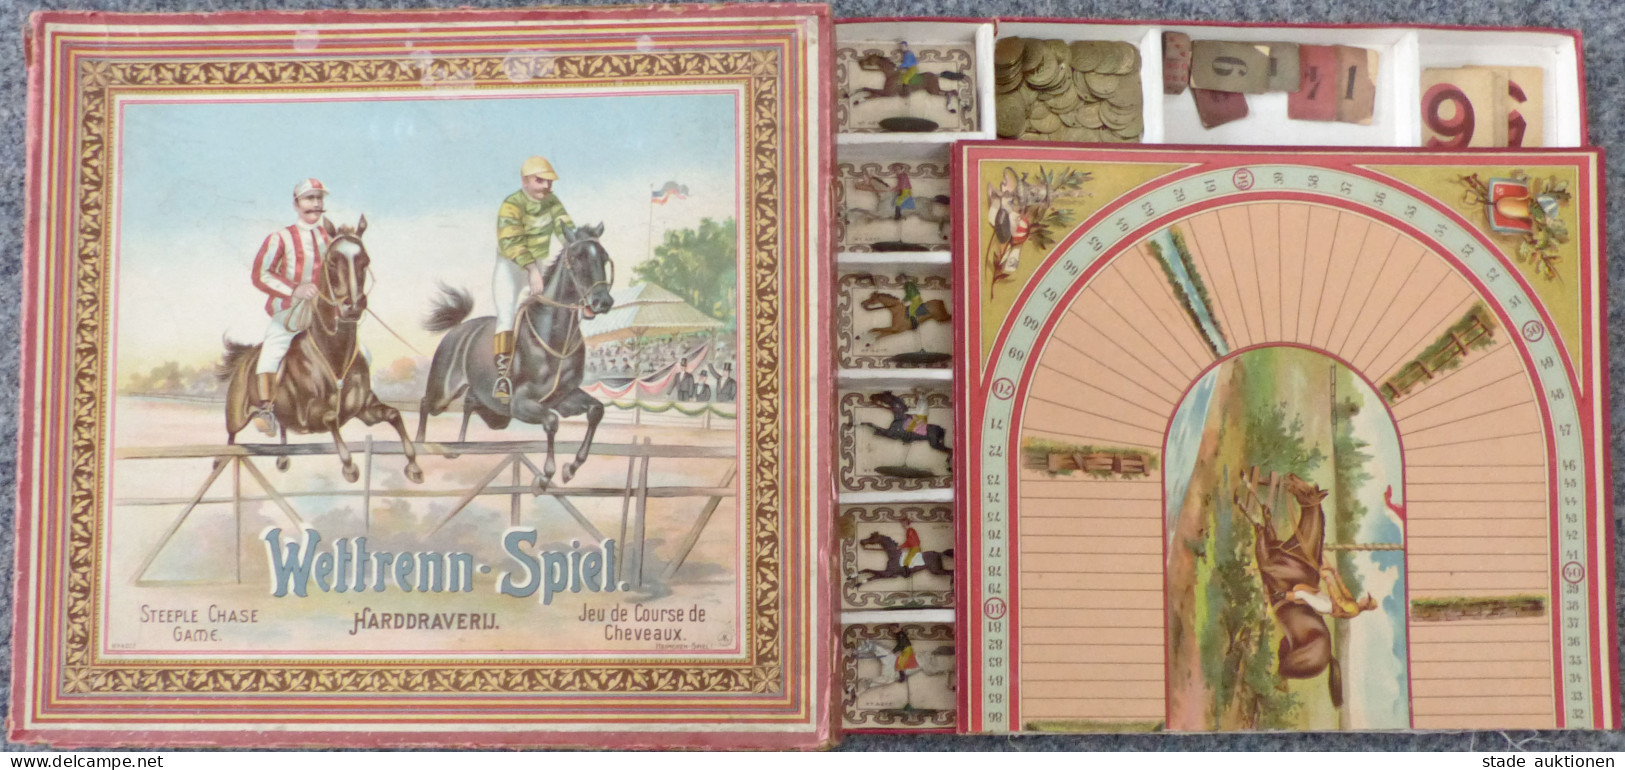 Spielzeug Wettrenn-Spiel Von Heimchen-Spiel 1902, Mit Original-Schachtel Und Anleitung, Alle Pferde Und Spielgeld Vorhan - Juegos Y Juguetes